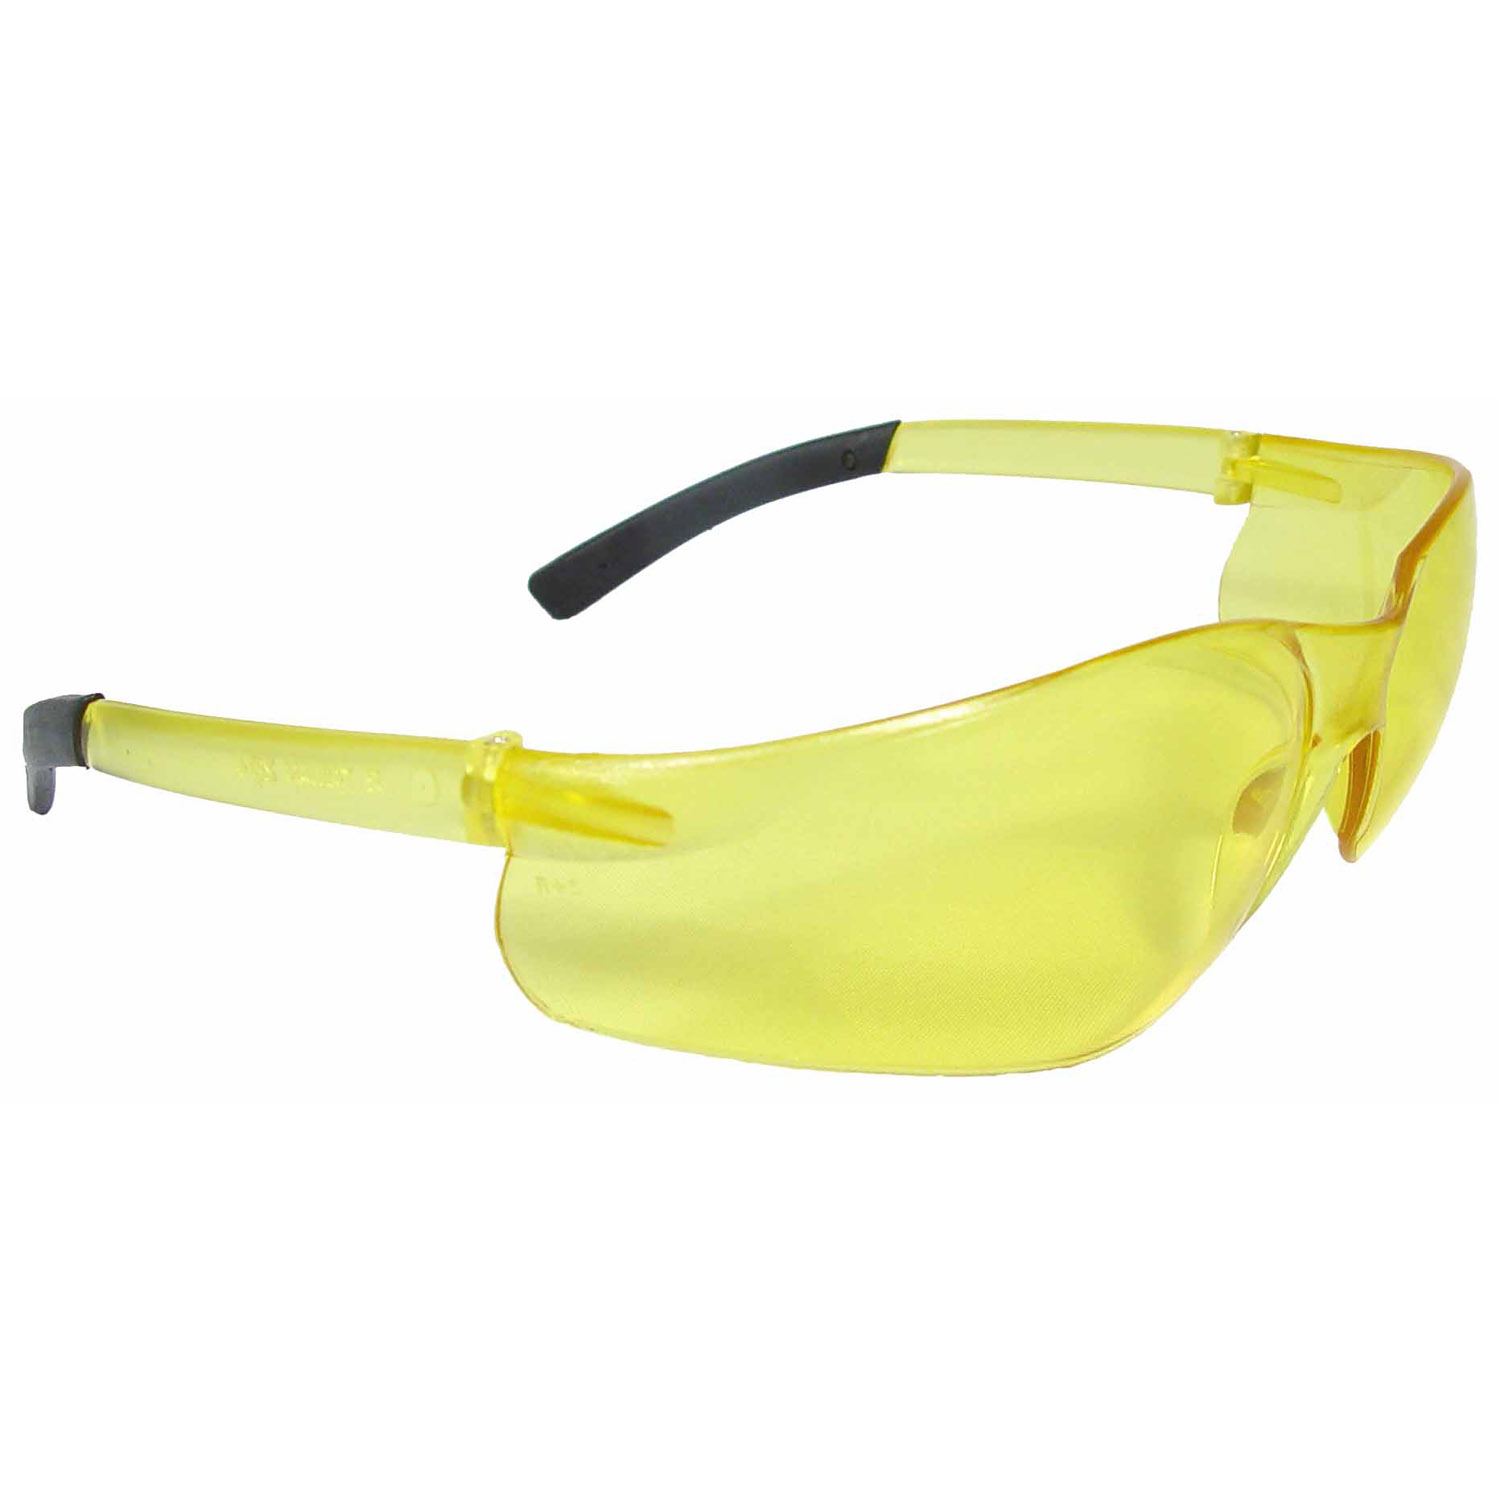 Rad-Atac™ Safety Eyewear - Amber Frame - Amber Lens - Tinted Lens